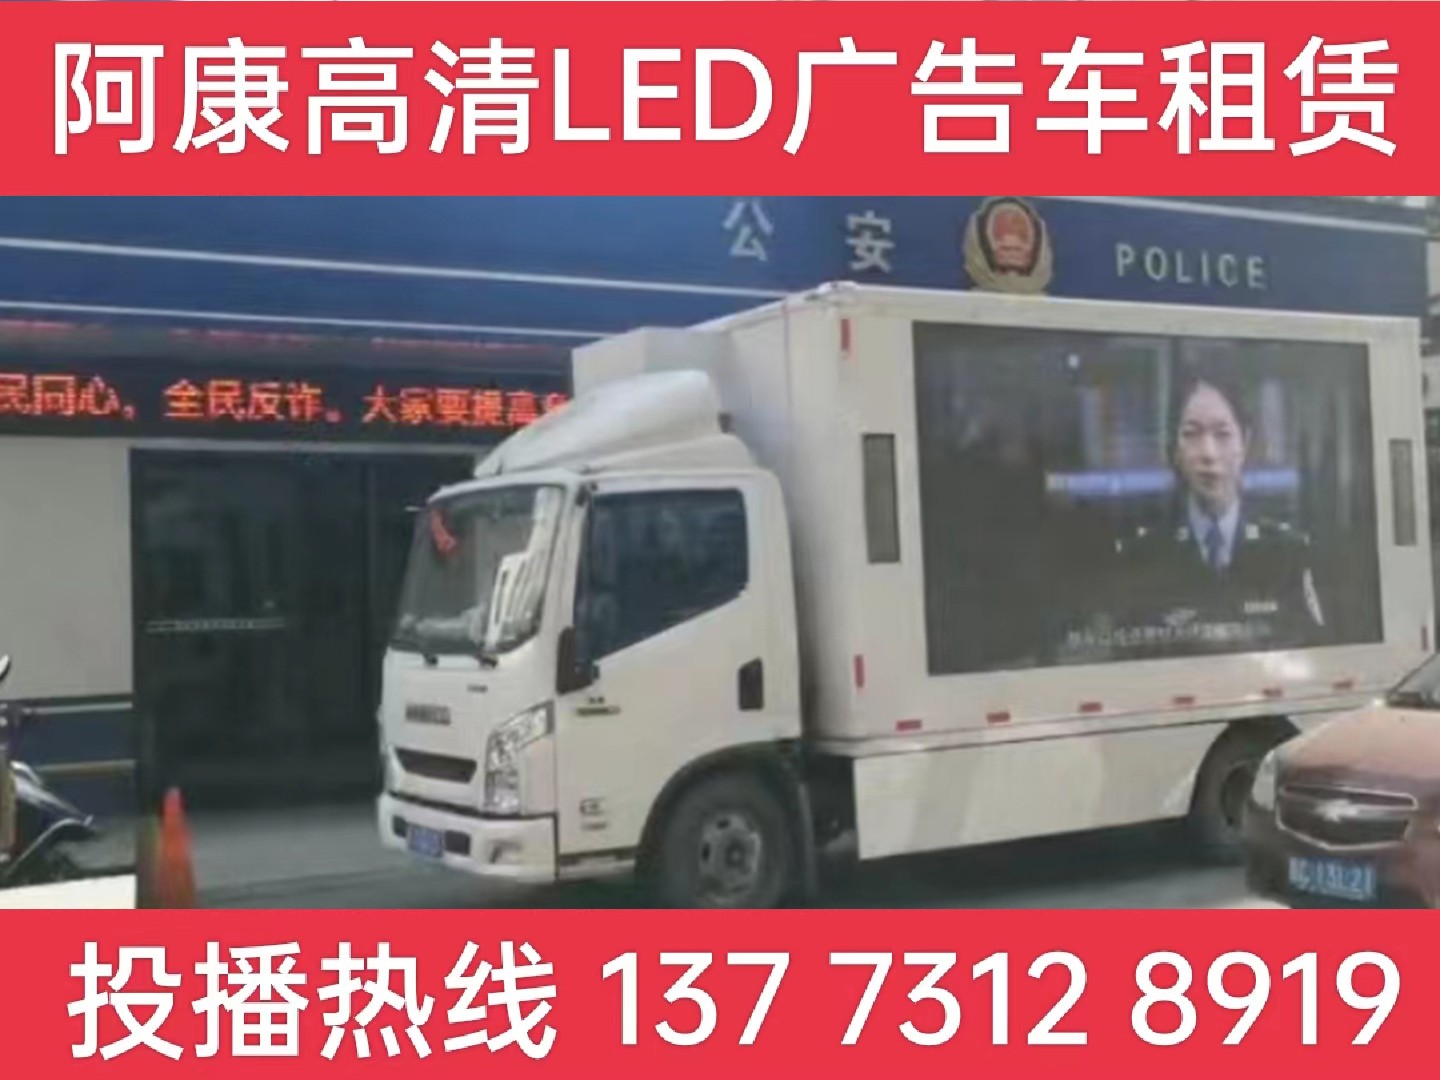 高淳区LED广告车租赁-反诈宣传